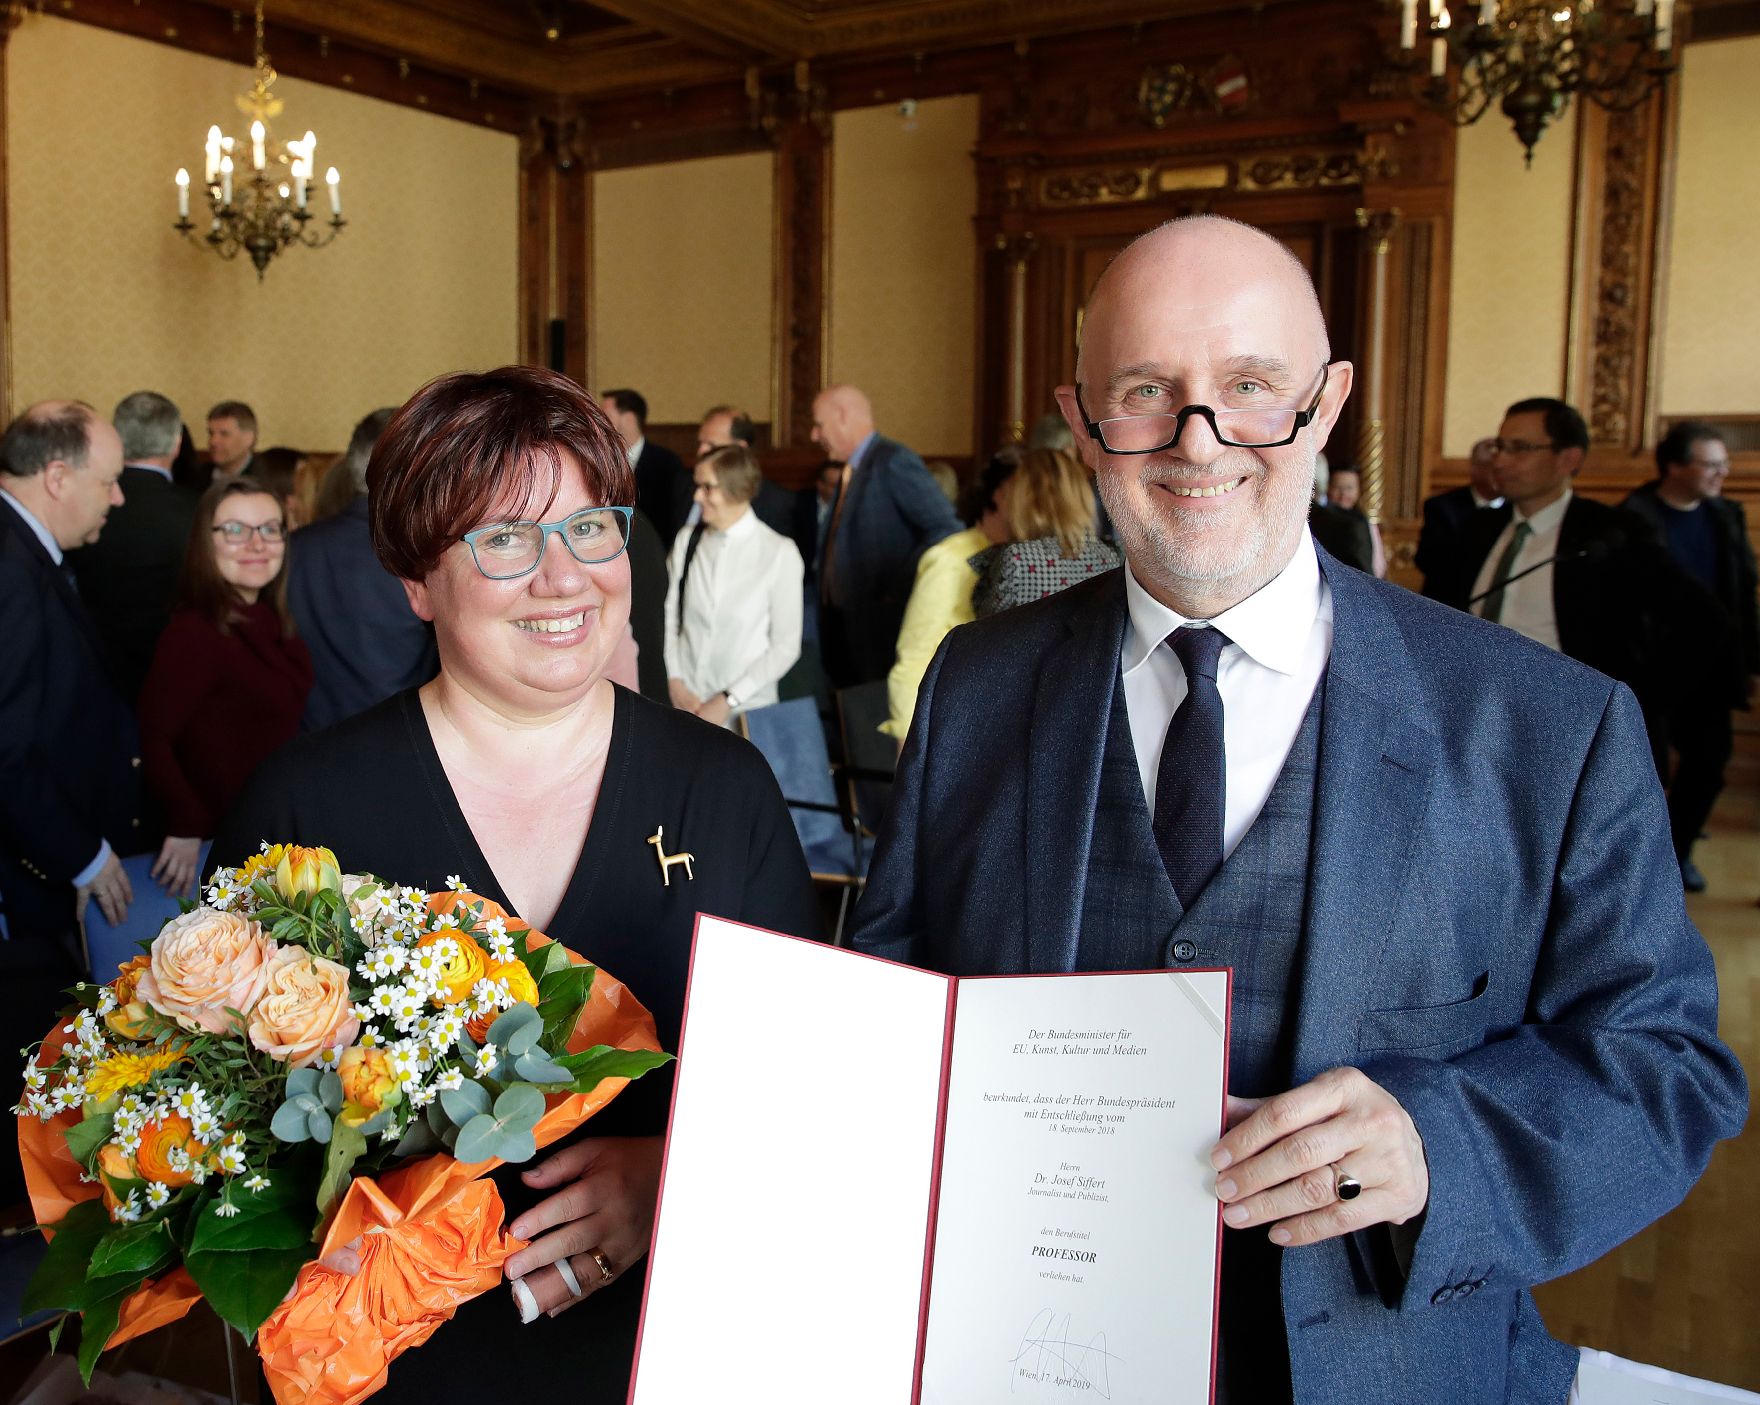 Am 17. April 2019 überreichte Reinhold Hohengartner die Urkunde über die Verleihung des Berufstitels Professor an Josef Siffert (r.).